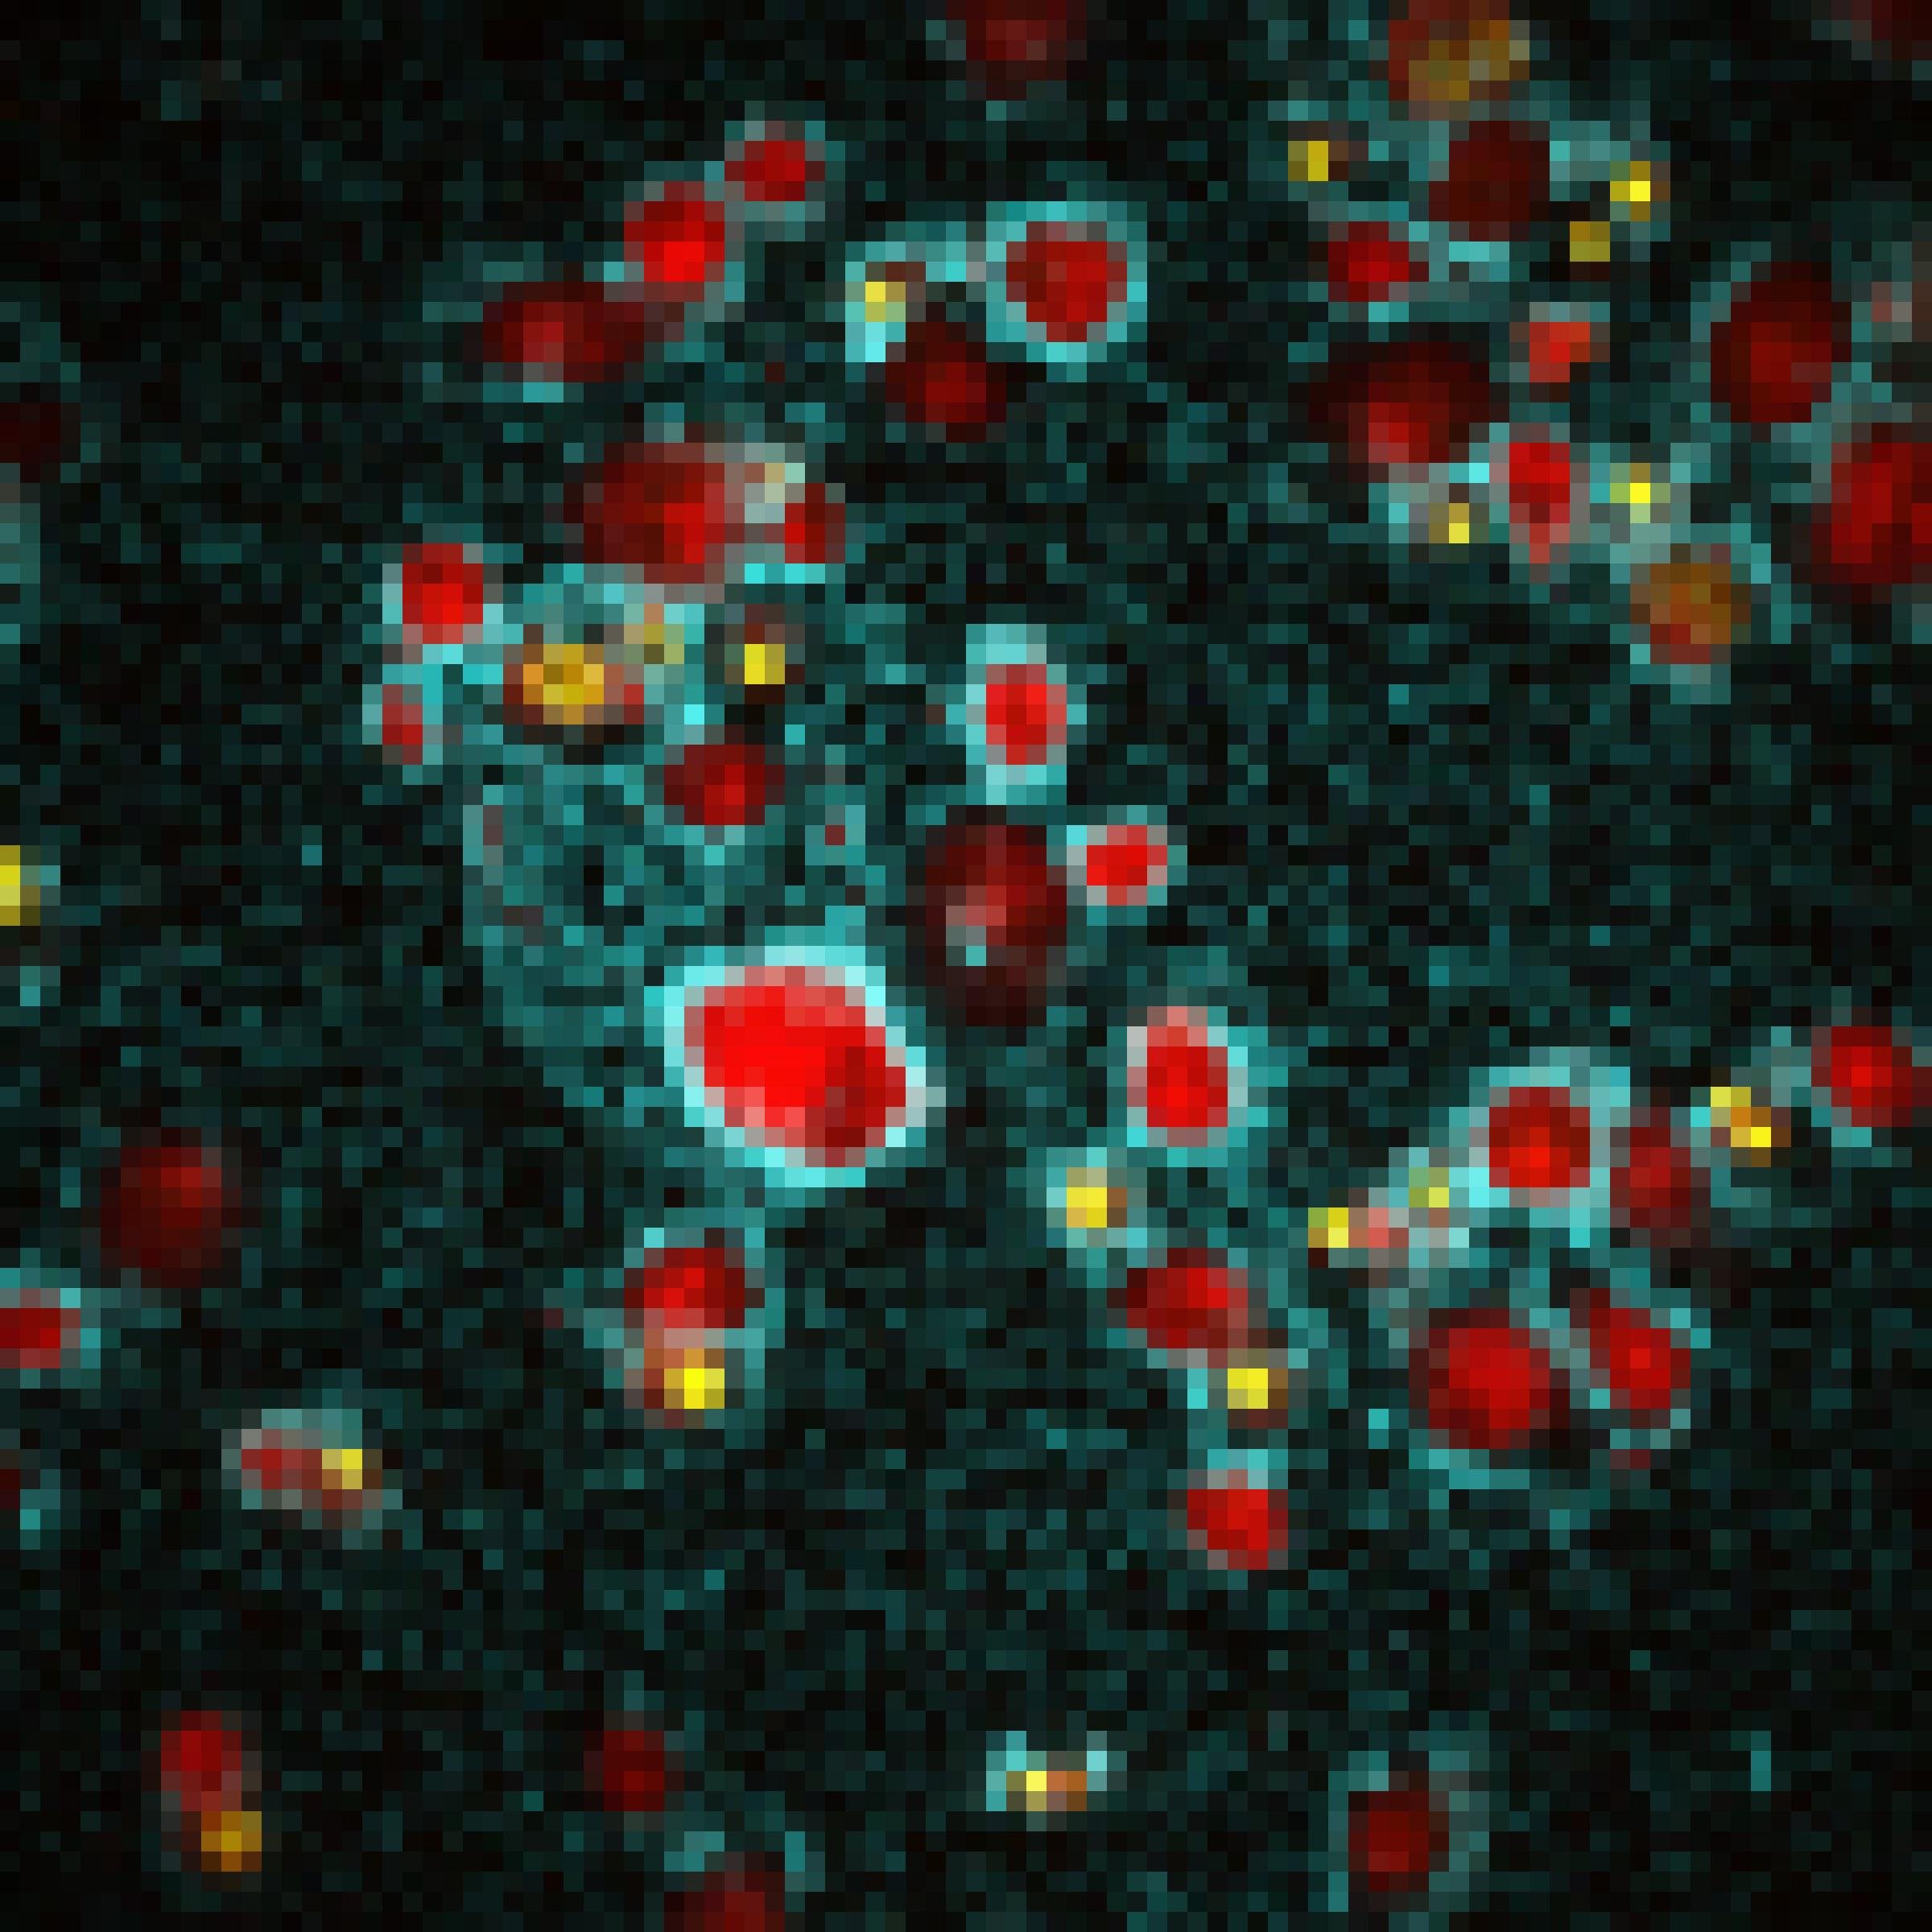 Mikroskopische Aufnahme von Immunzellen, die von einem blauen Biofilm wie von einem Halo umgeben sind.